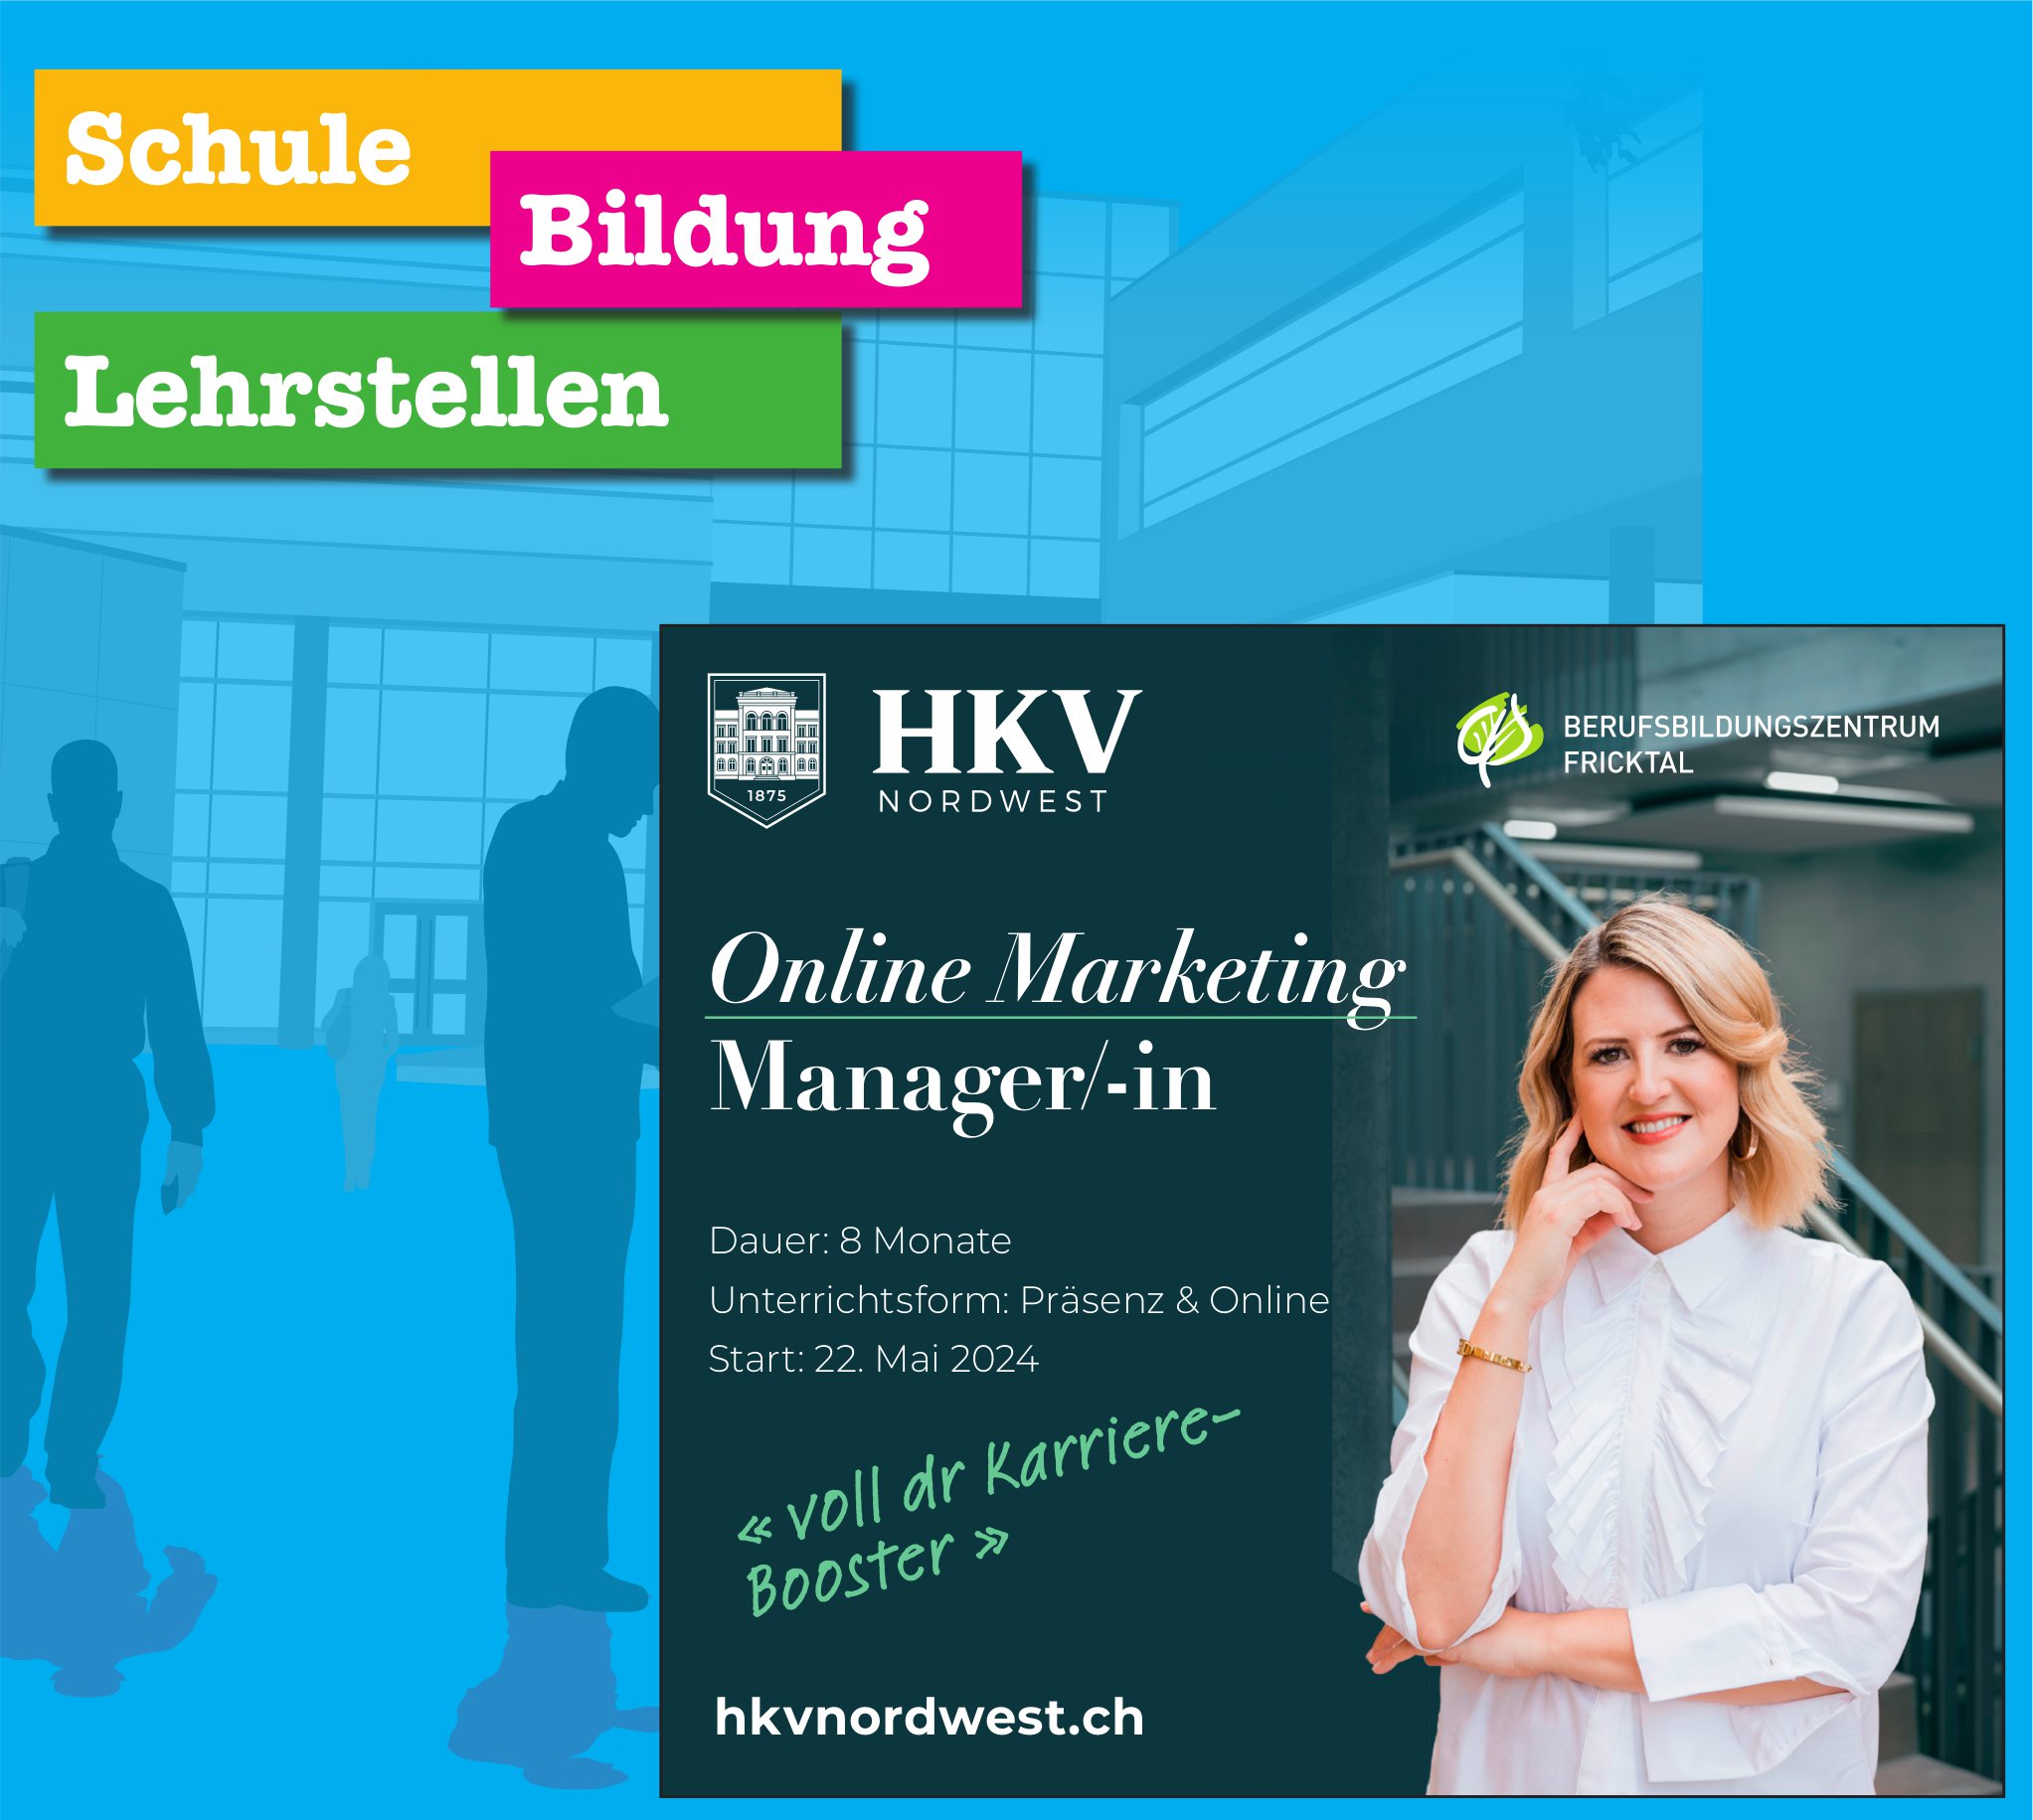 Berufsbildungszentrum Fricktal, Online Marketing Manager/-in